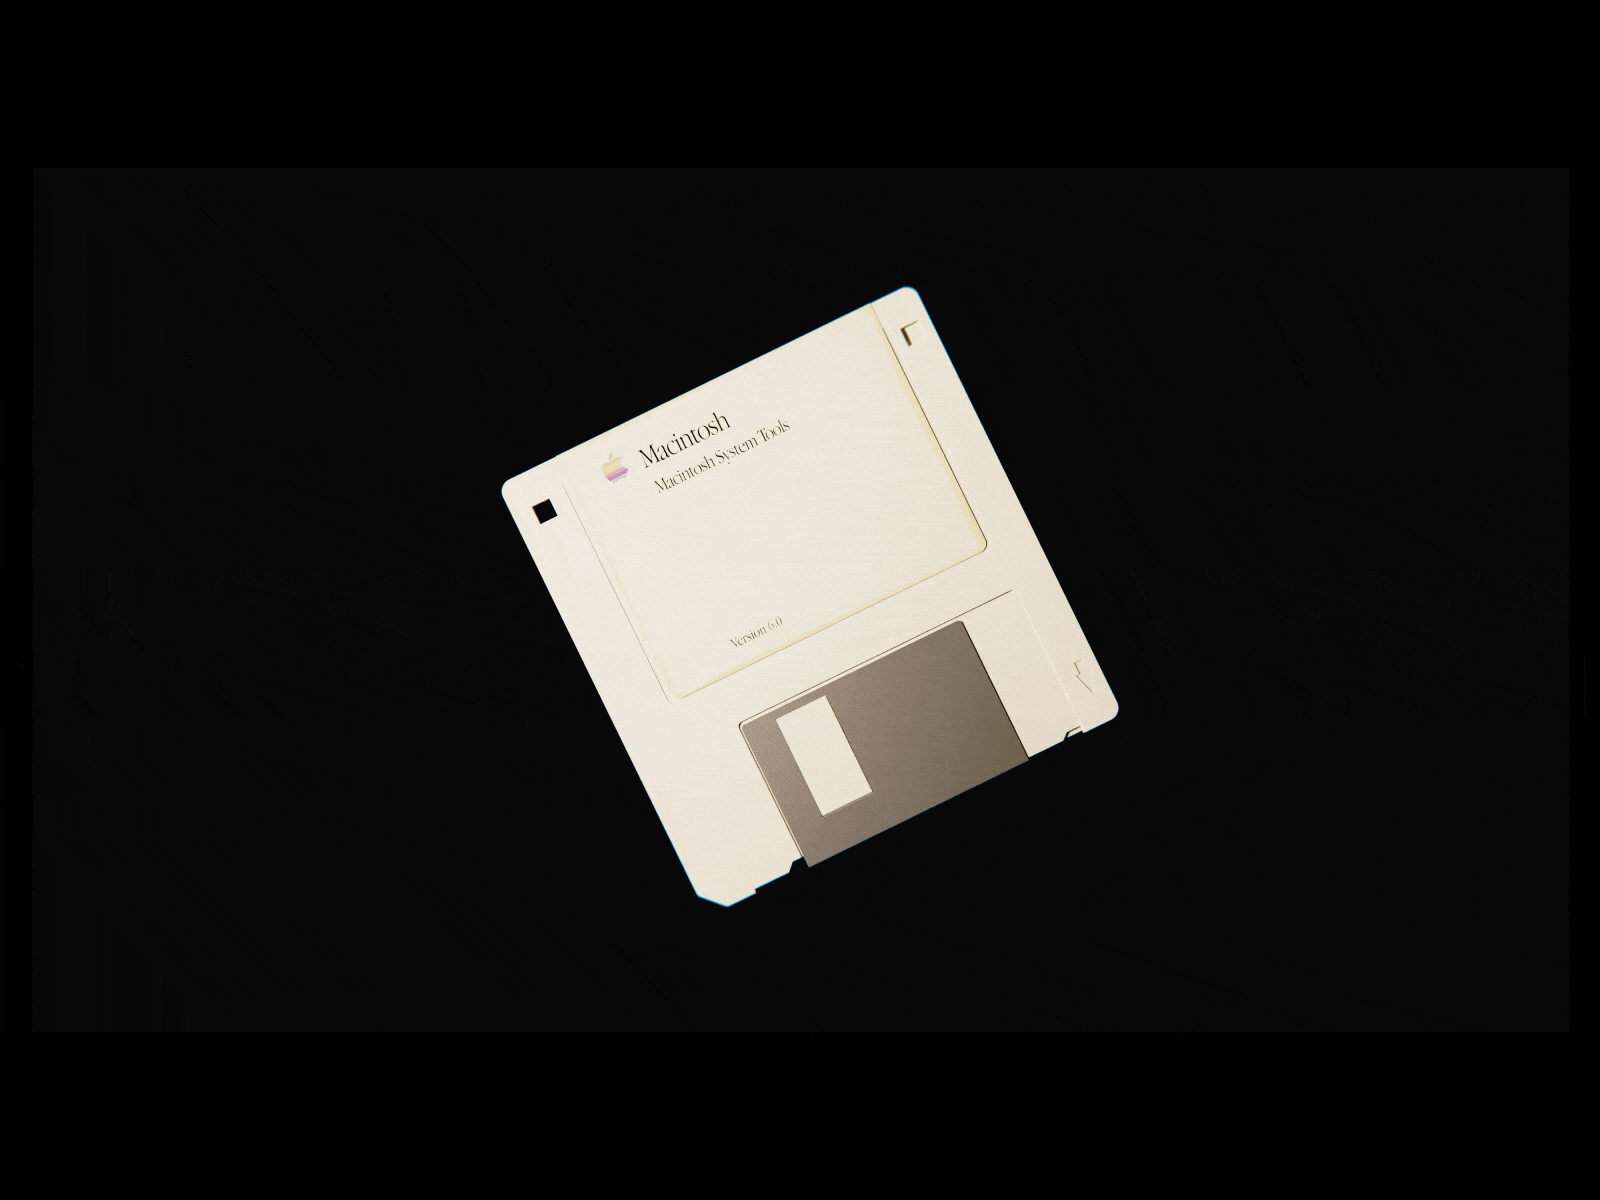 Floppy Disk 3d 3d model animation apple blender floppy disk model modelling tech vintage